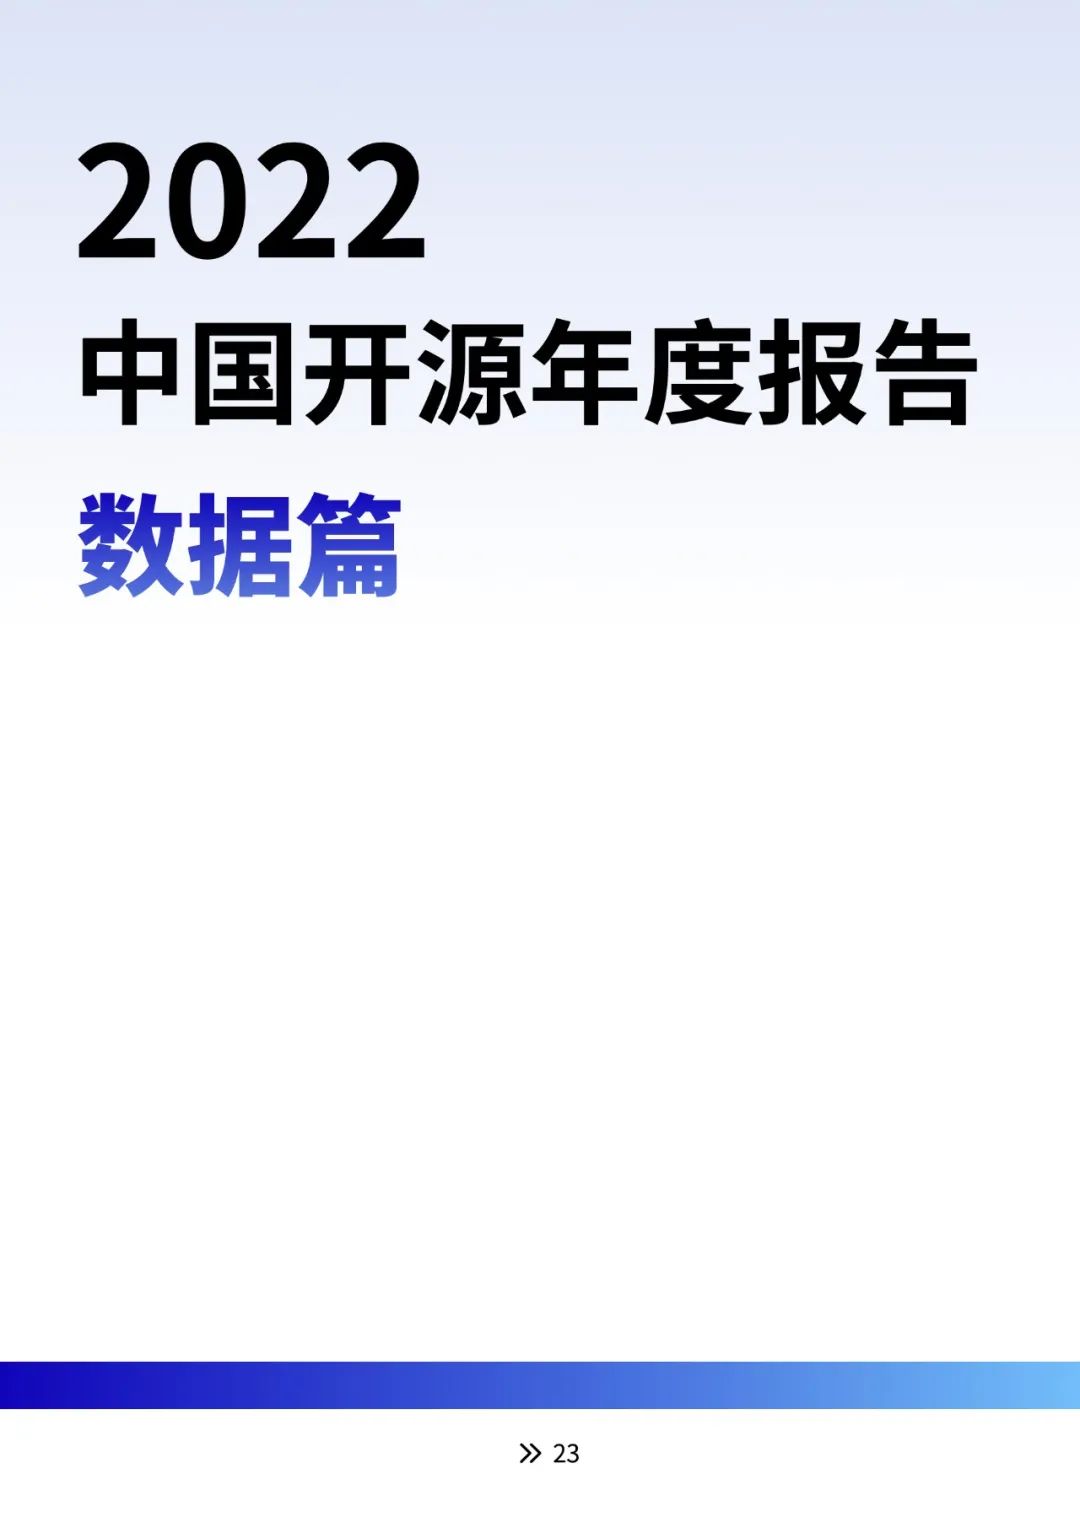 【2022 中国开源年度报告】云计算大事记